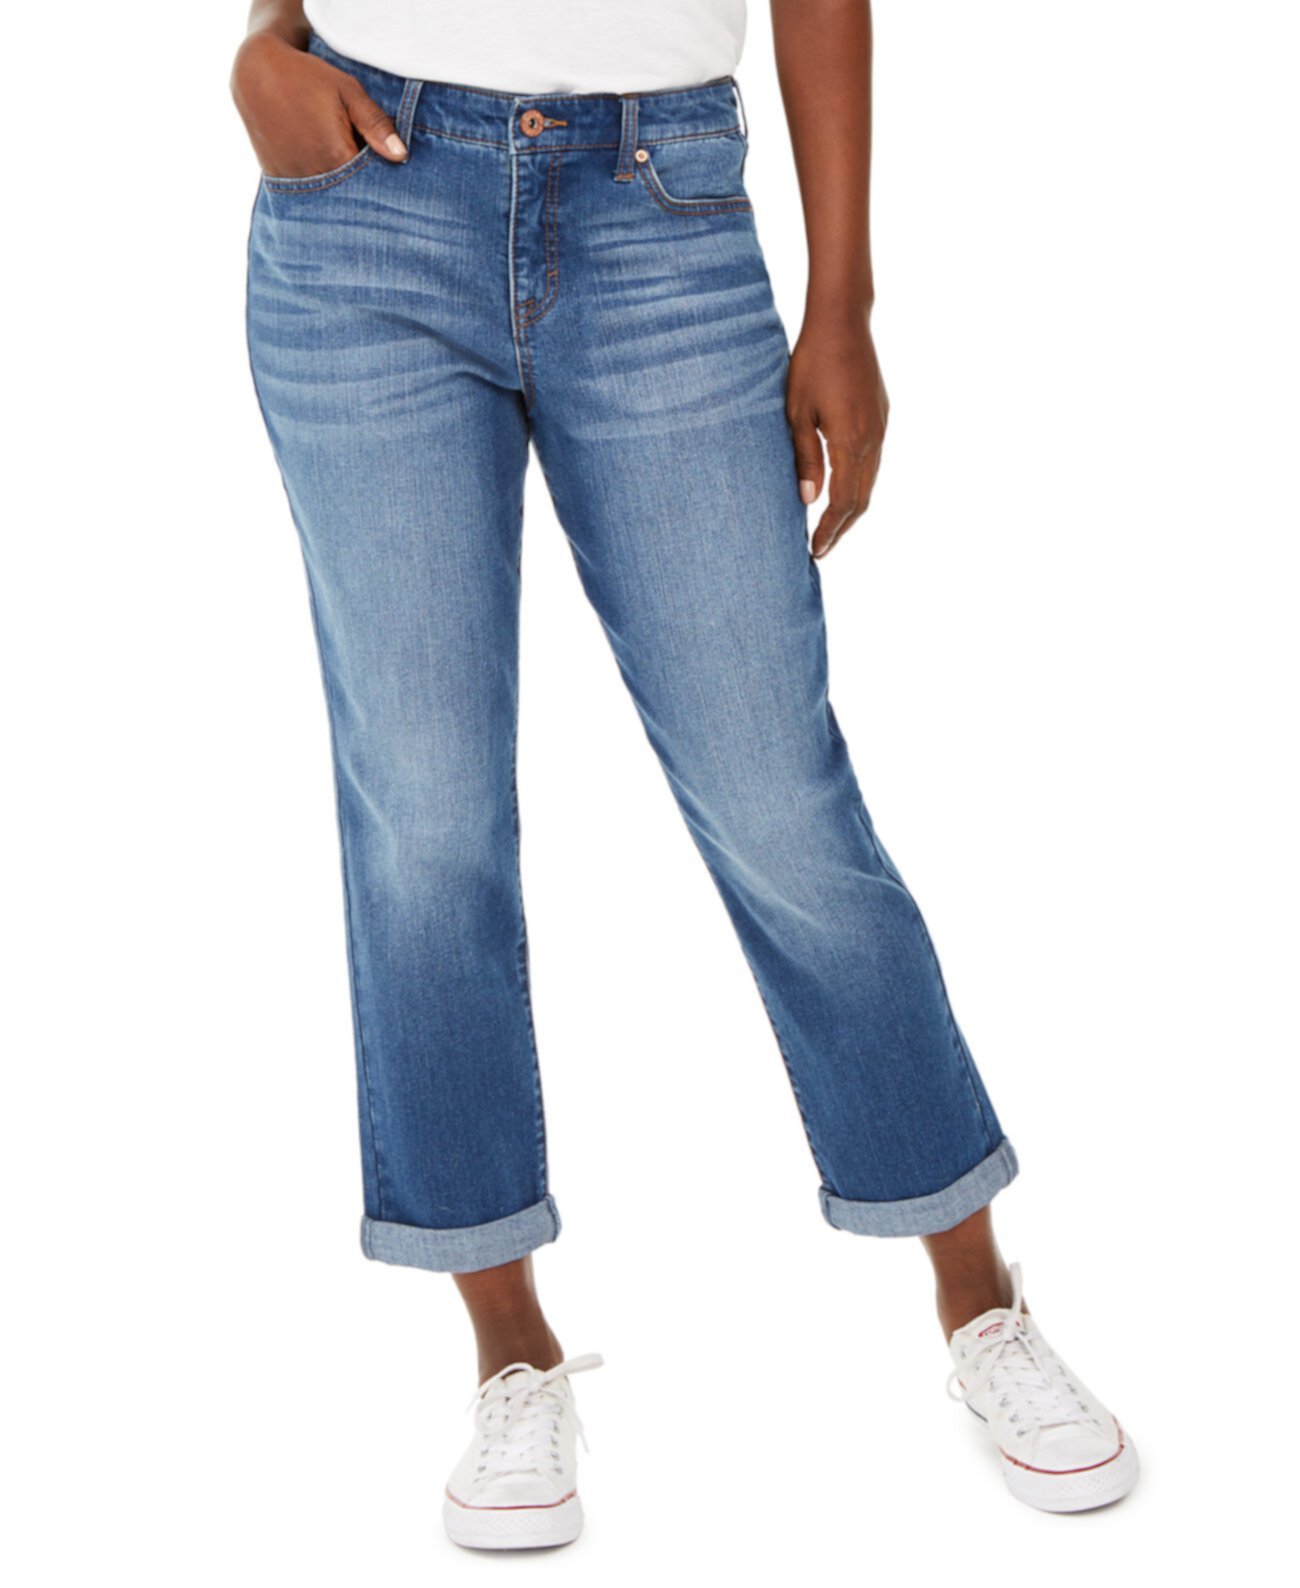 Пышные облегающие джинсы Girlfriend с манжетами, созданные для Macy's Style & Co